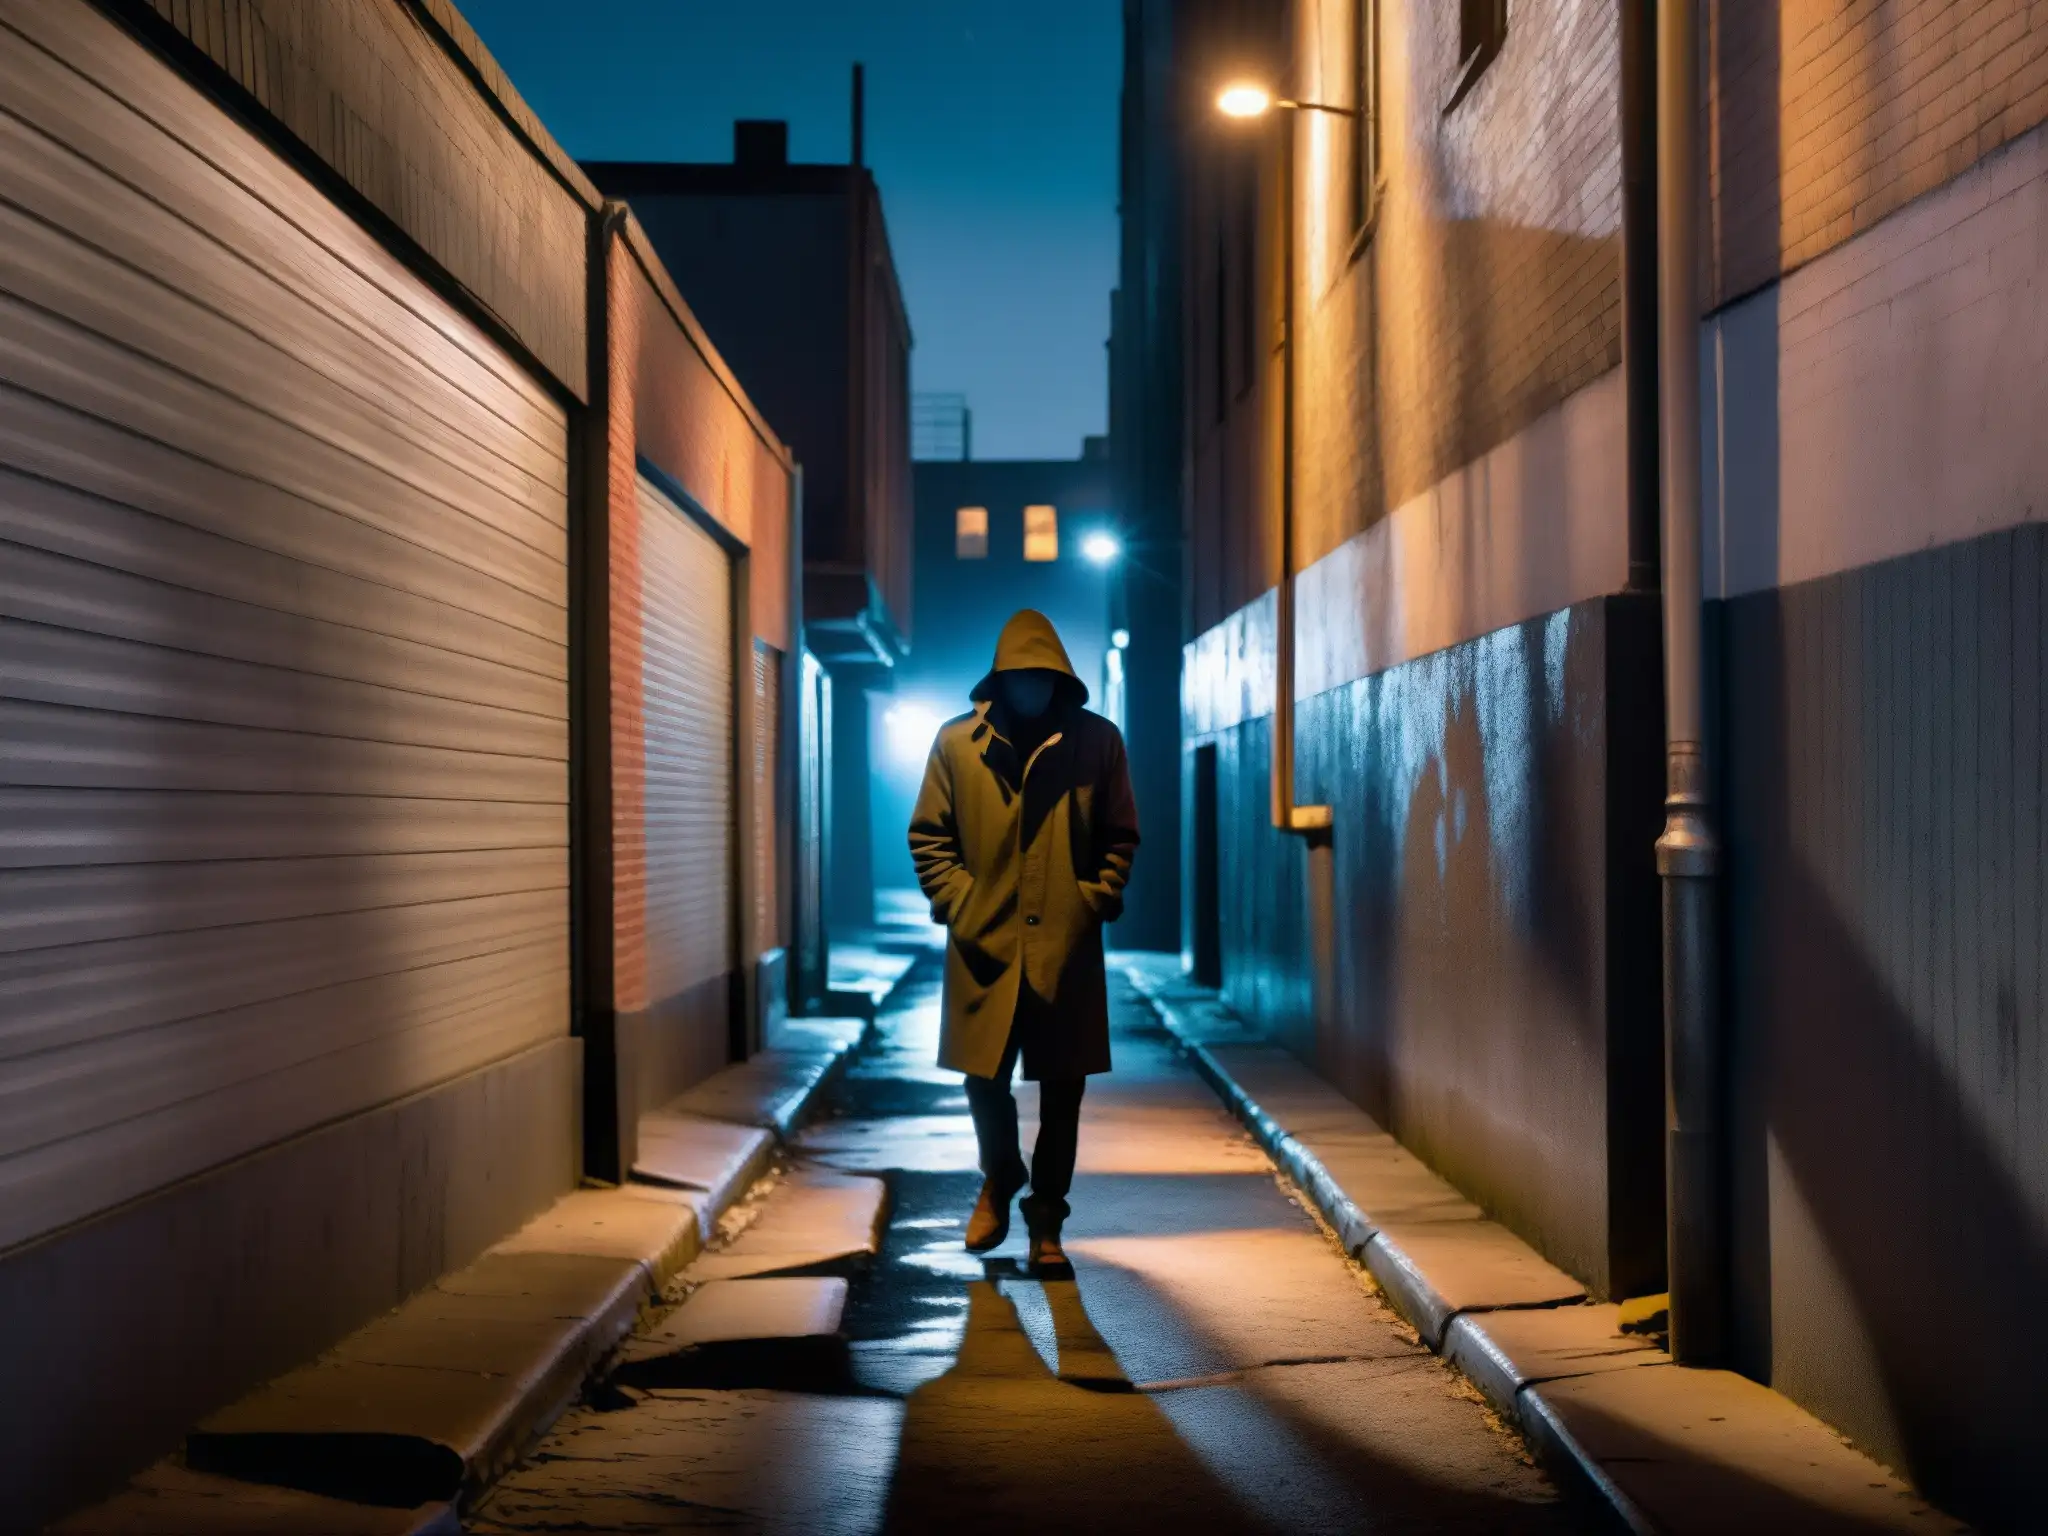 Psicología de las leyendas urbanas: Un callejón sombrío y misterioso de noche, con luces tenues y sombras inquietantes entre paredes graffiteadas